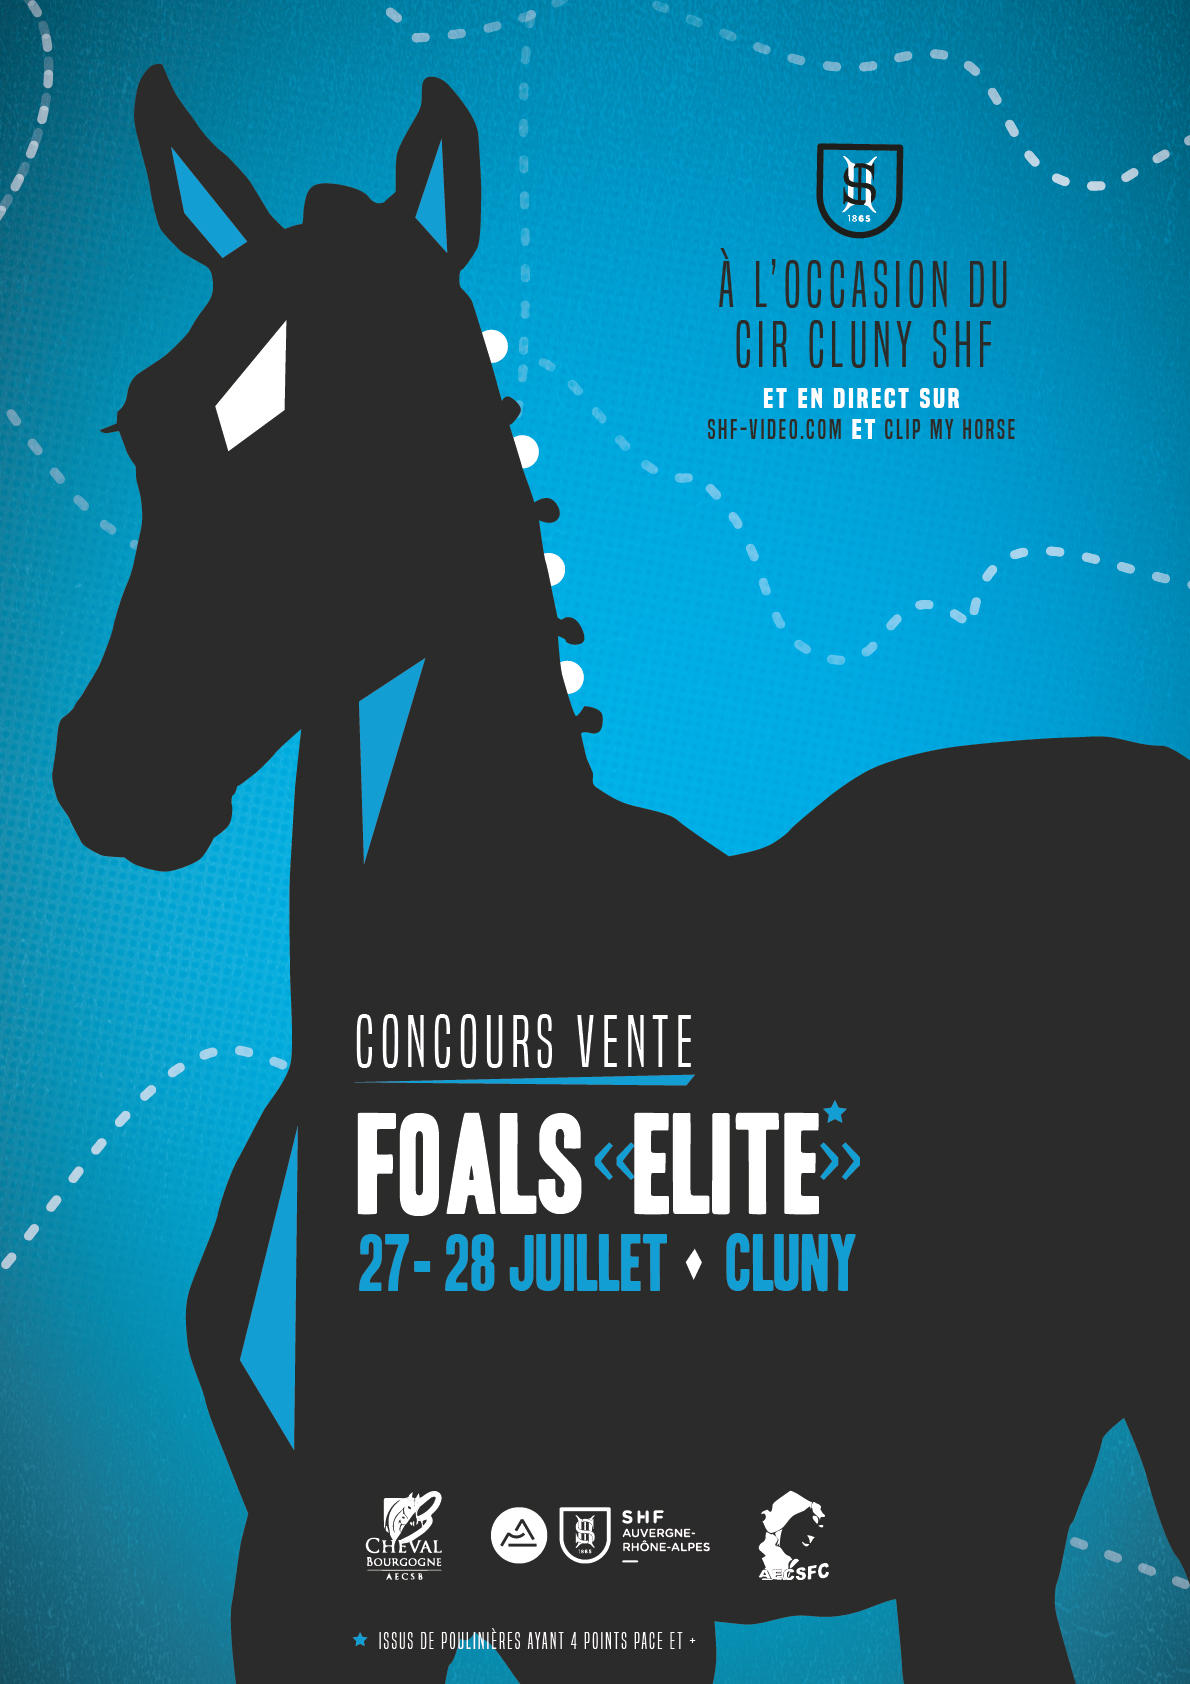 Concours vente foals élite